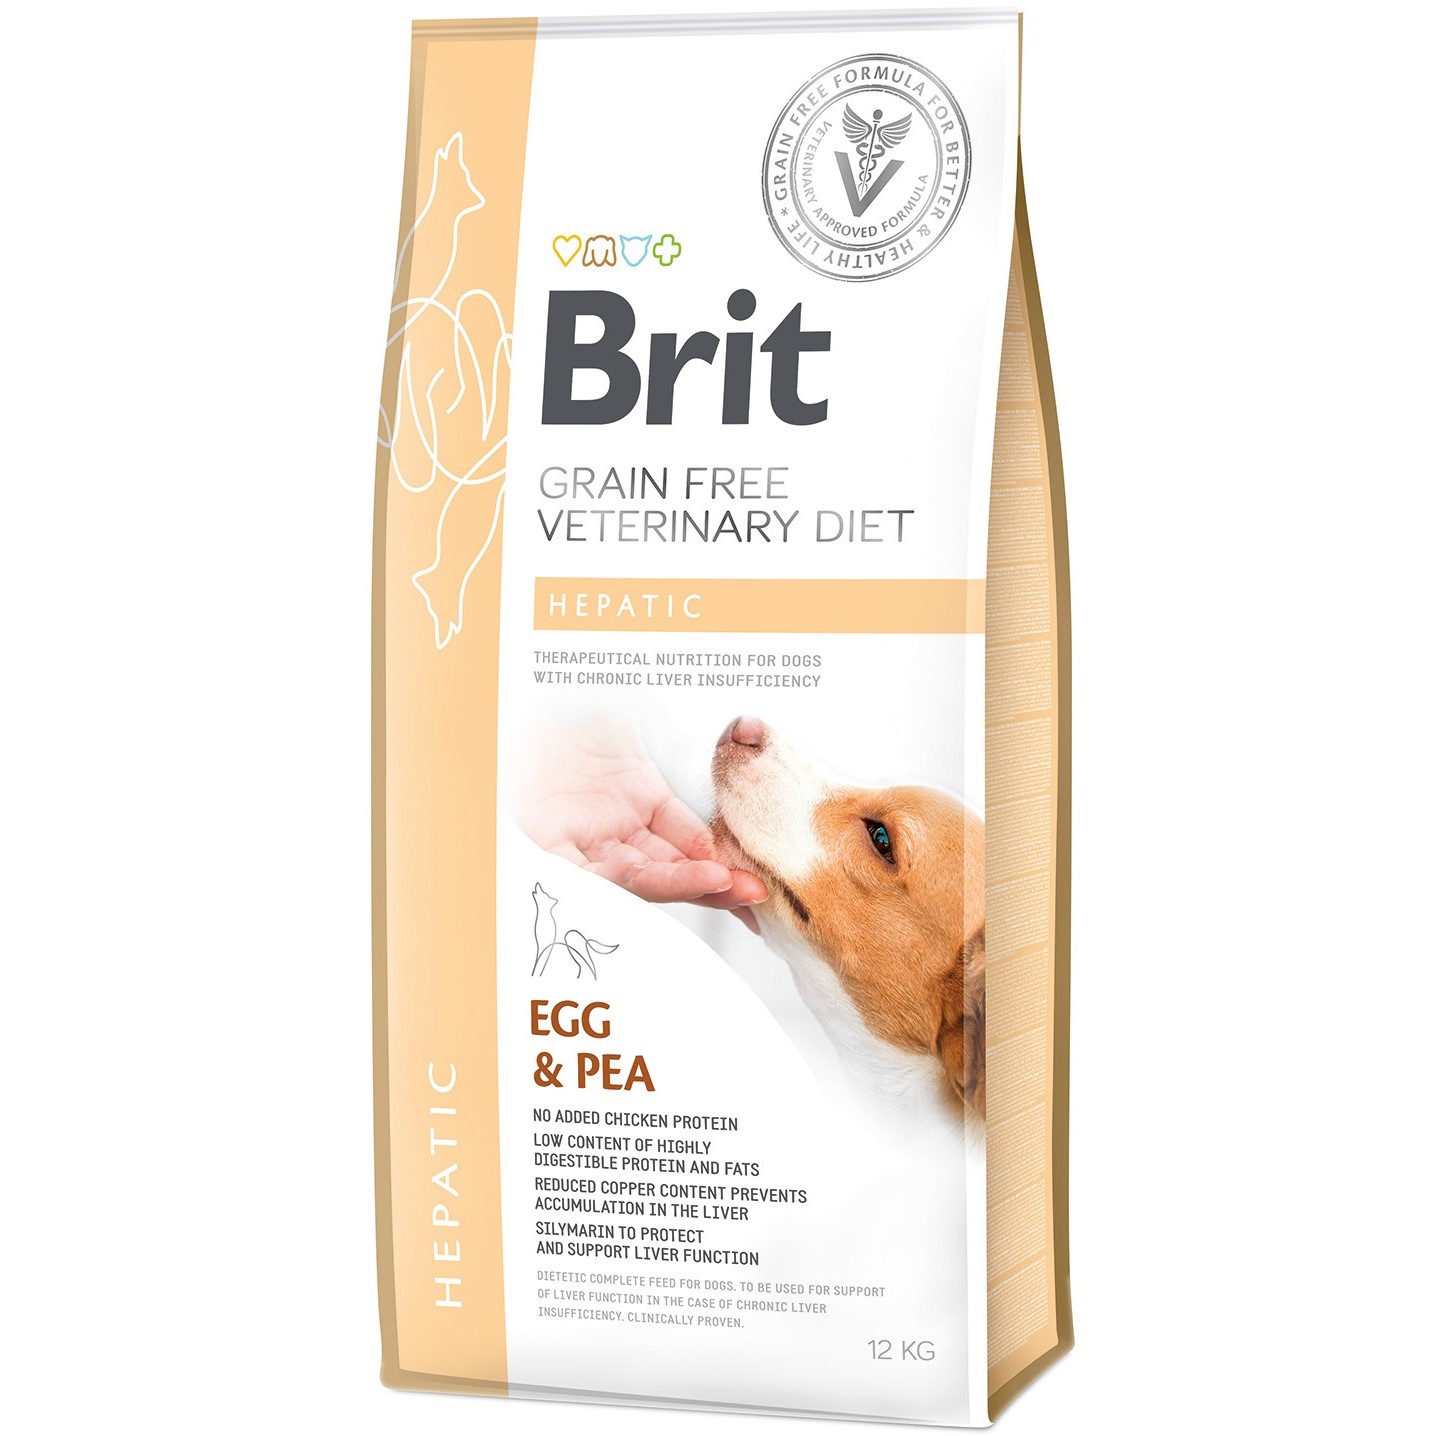 Сухий корм для дорослих собак Brit VetDiets Grain Free Hepatic при хворобі печінки з яйцем, горохом, бататом та гречкою 12 кг - фото 1